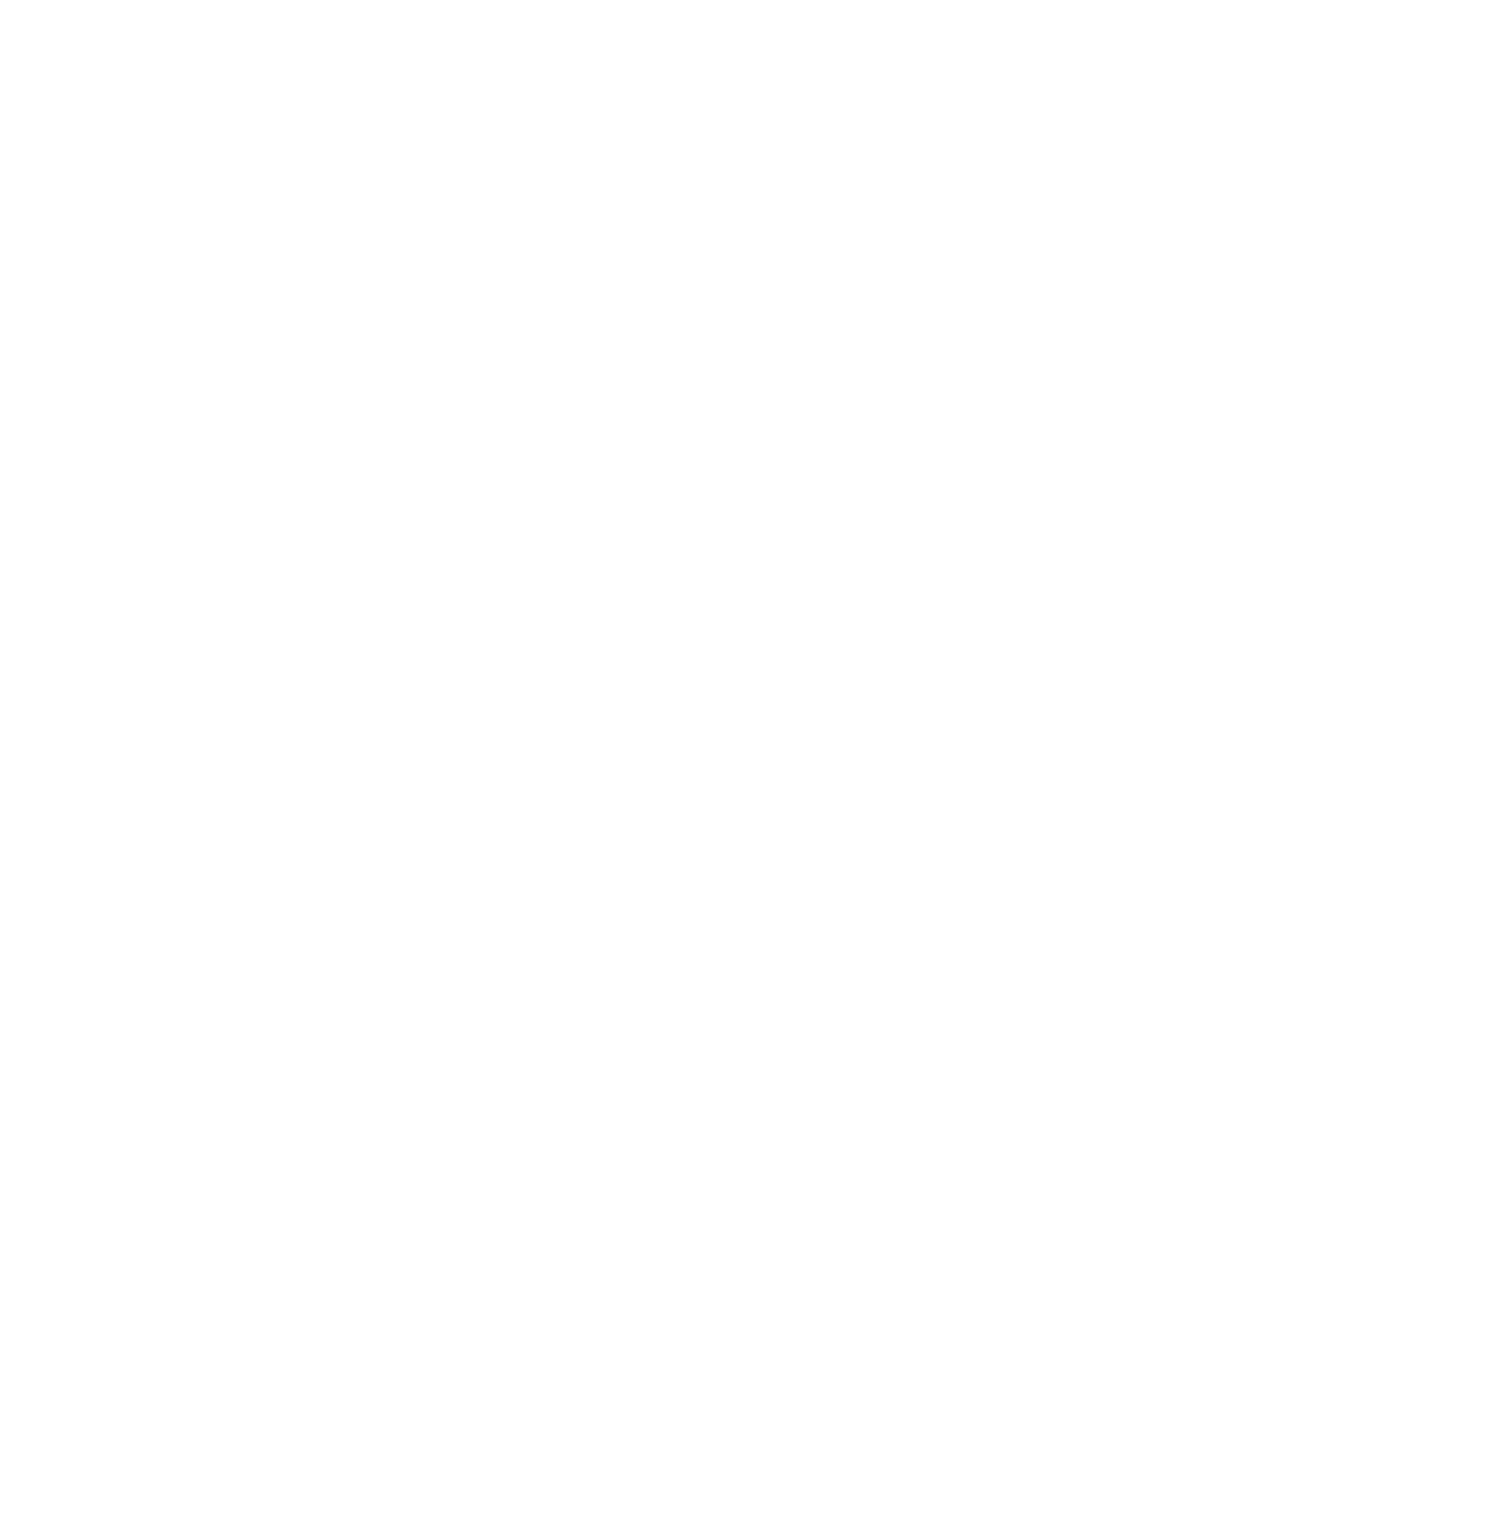 Mister Spex logo for dark backgrounds (transparent PNG)